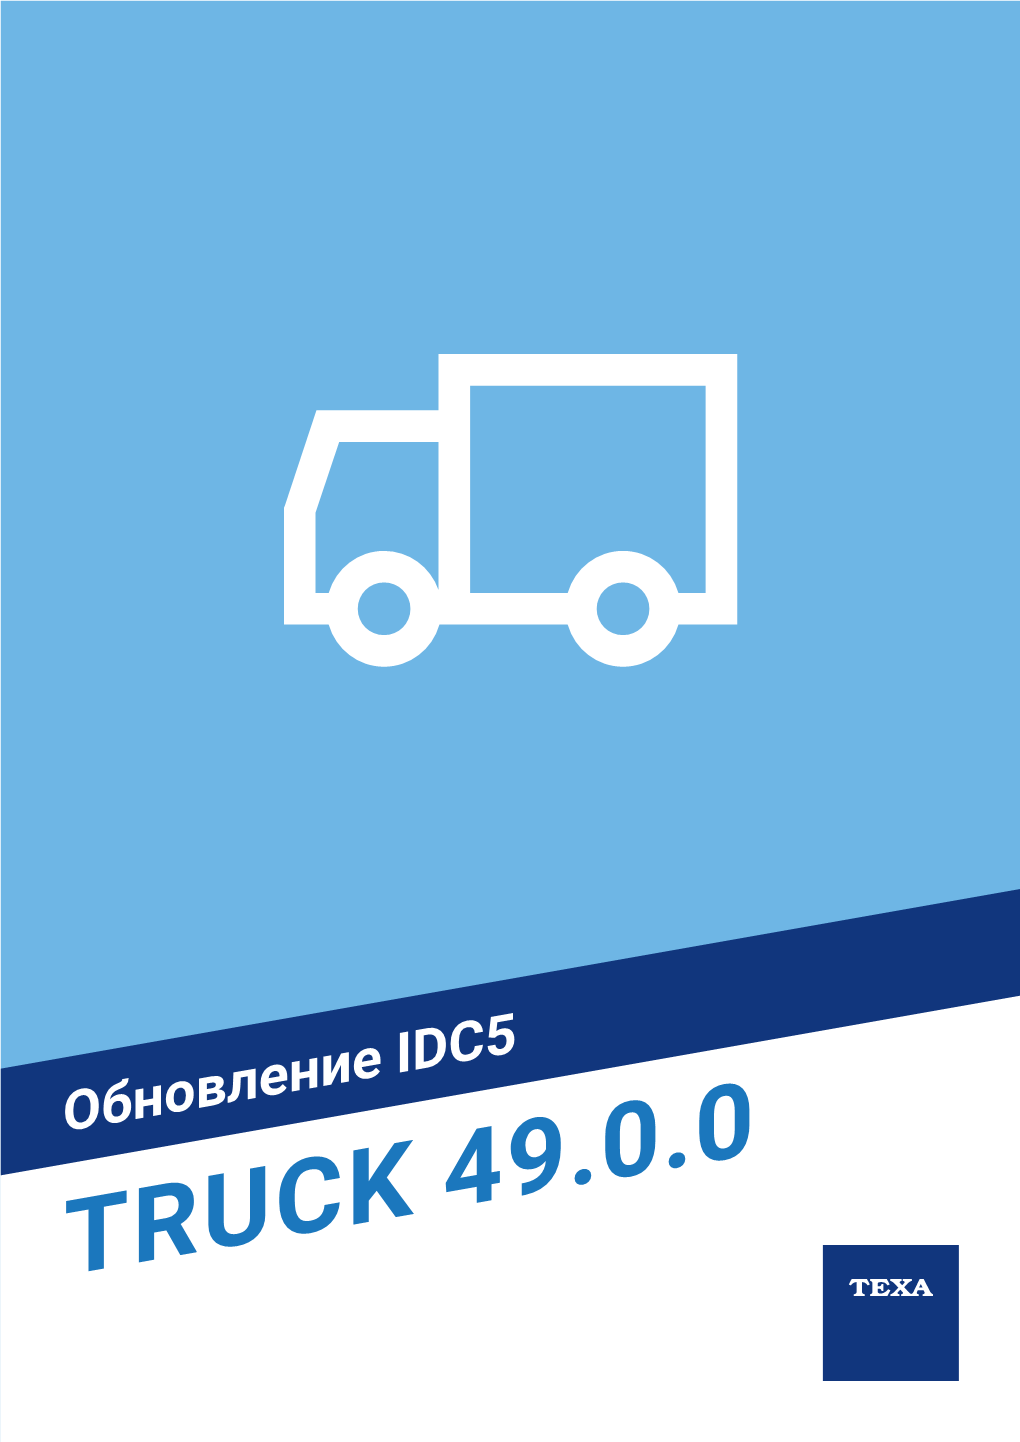 Обновление По Idc5 Truck 49.0.0